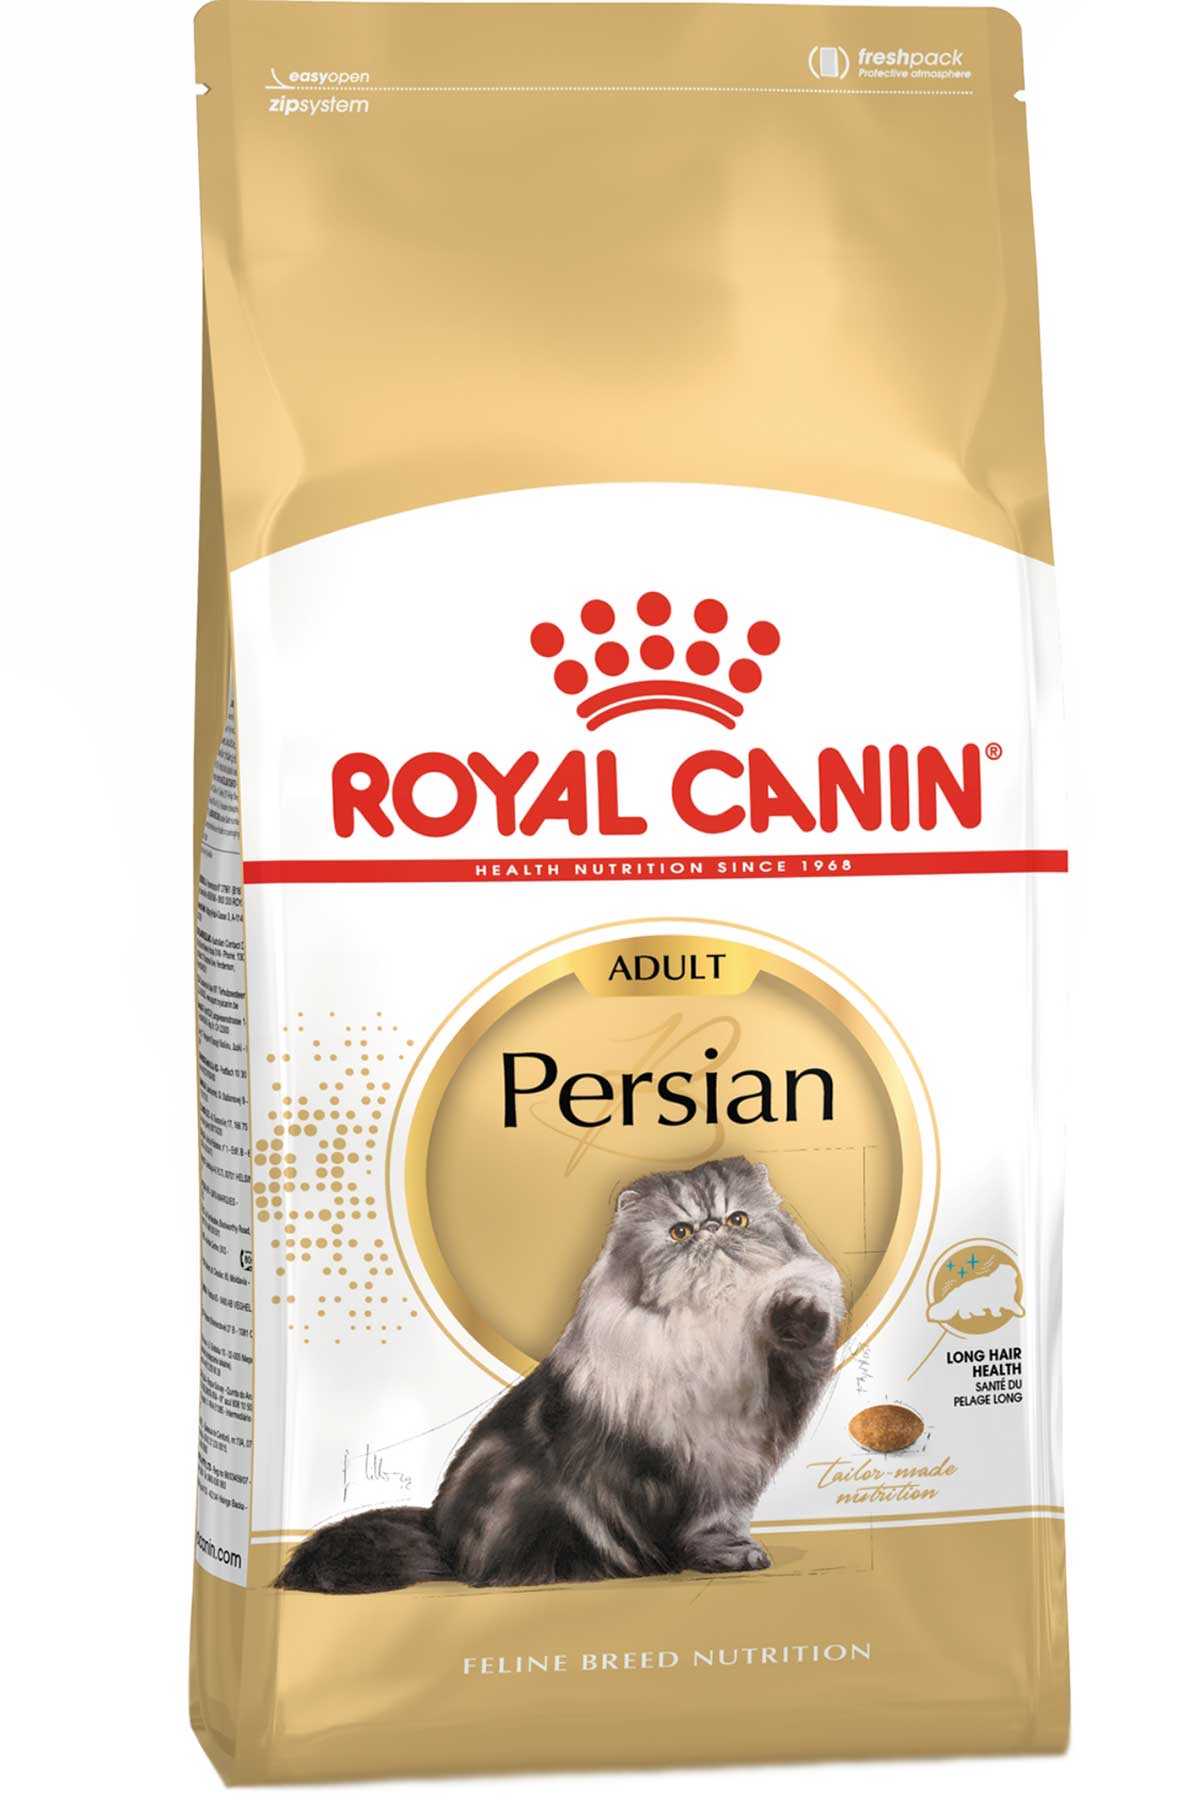 Royal Canin Persian İran Irkı Yetişkin Kedi Maması 4kg